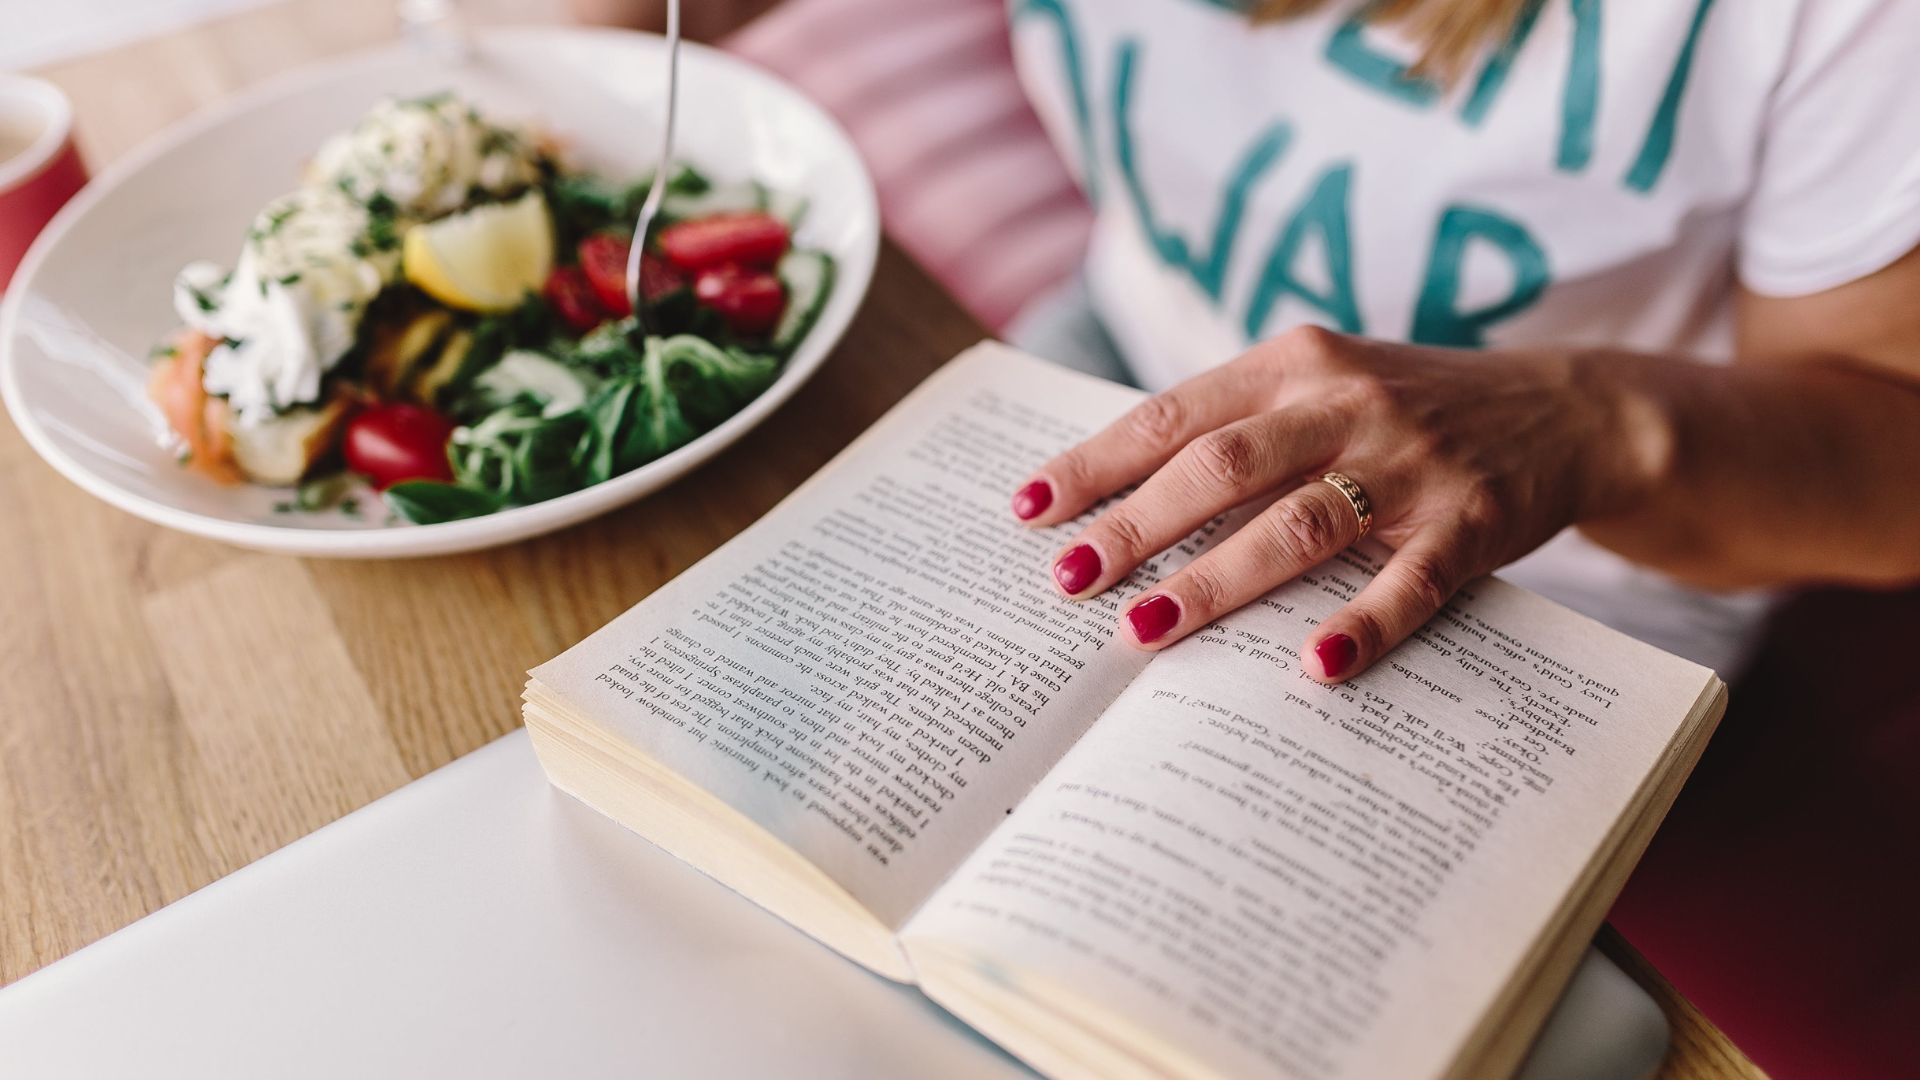 Kobieta czyta książki o zdrowym odżywianiu przy obiedzie.